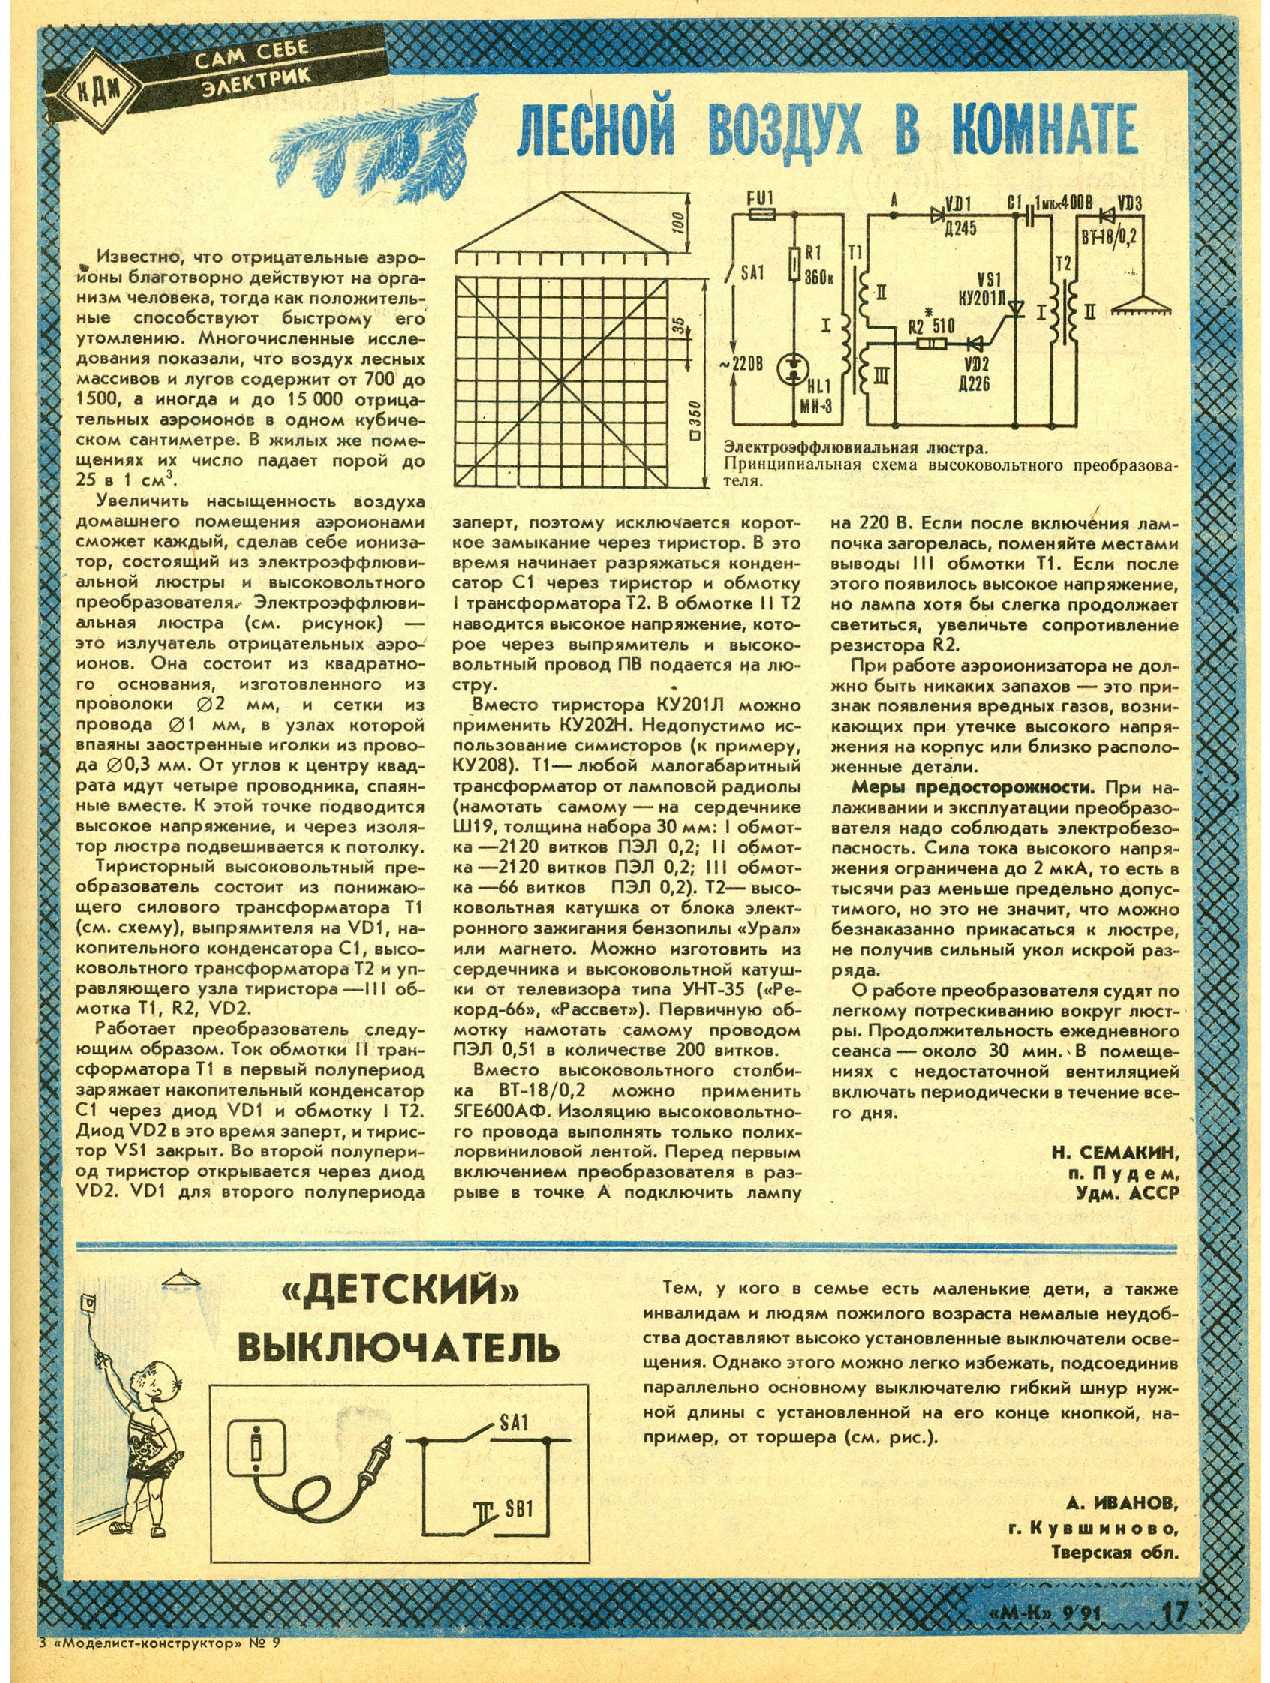 МК 9, 1991, 17 c.